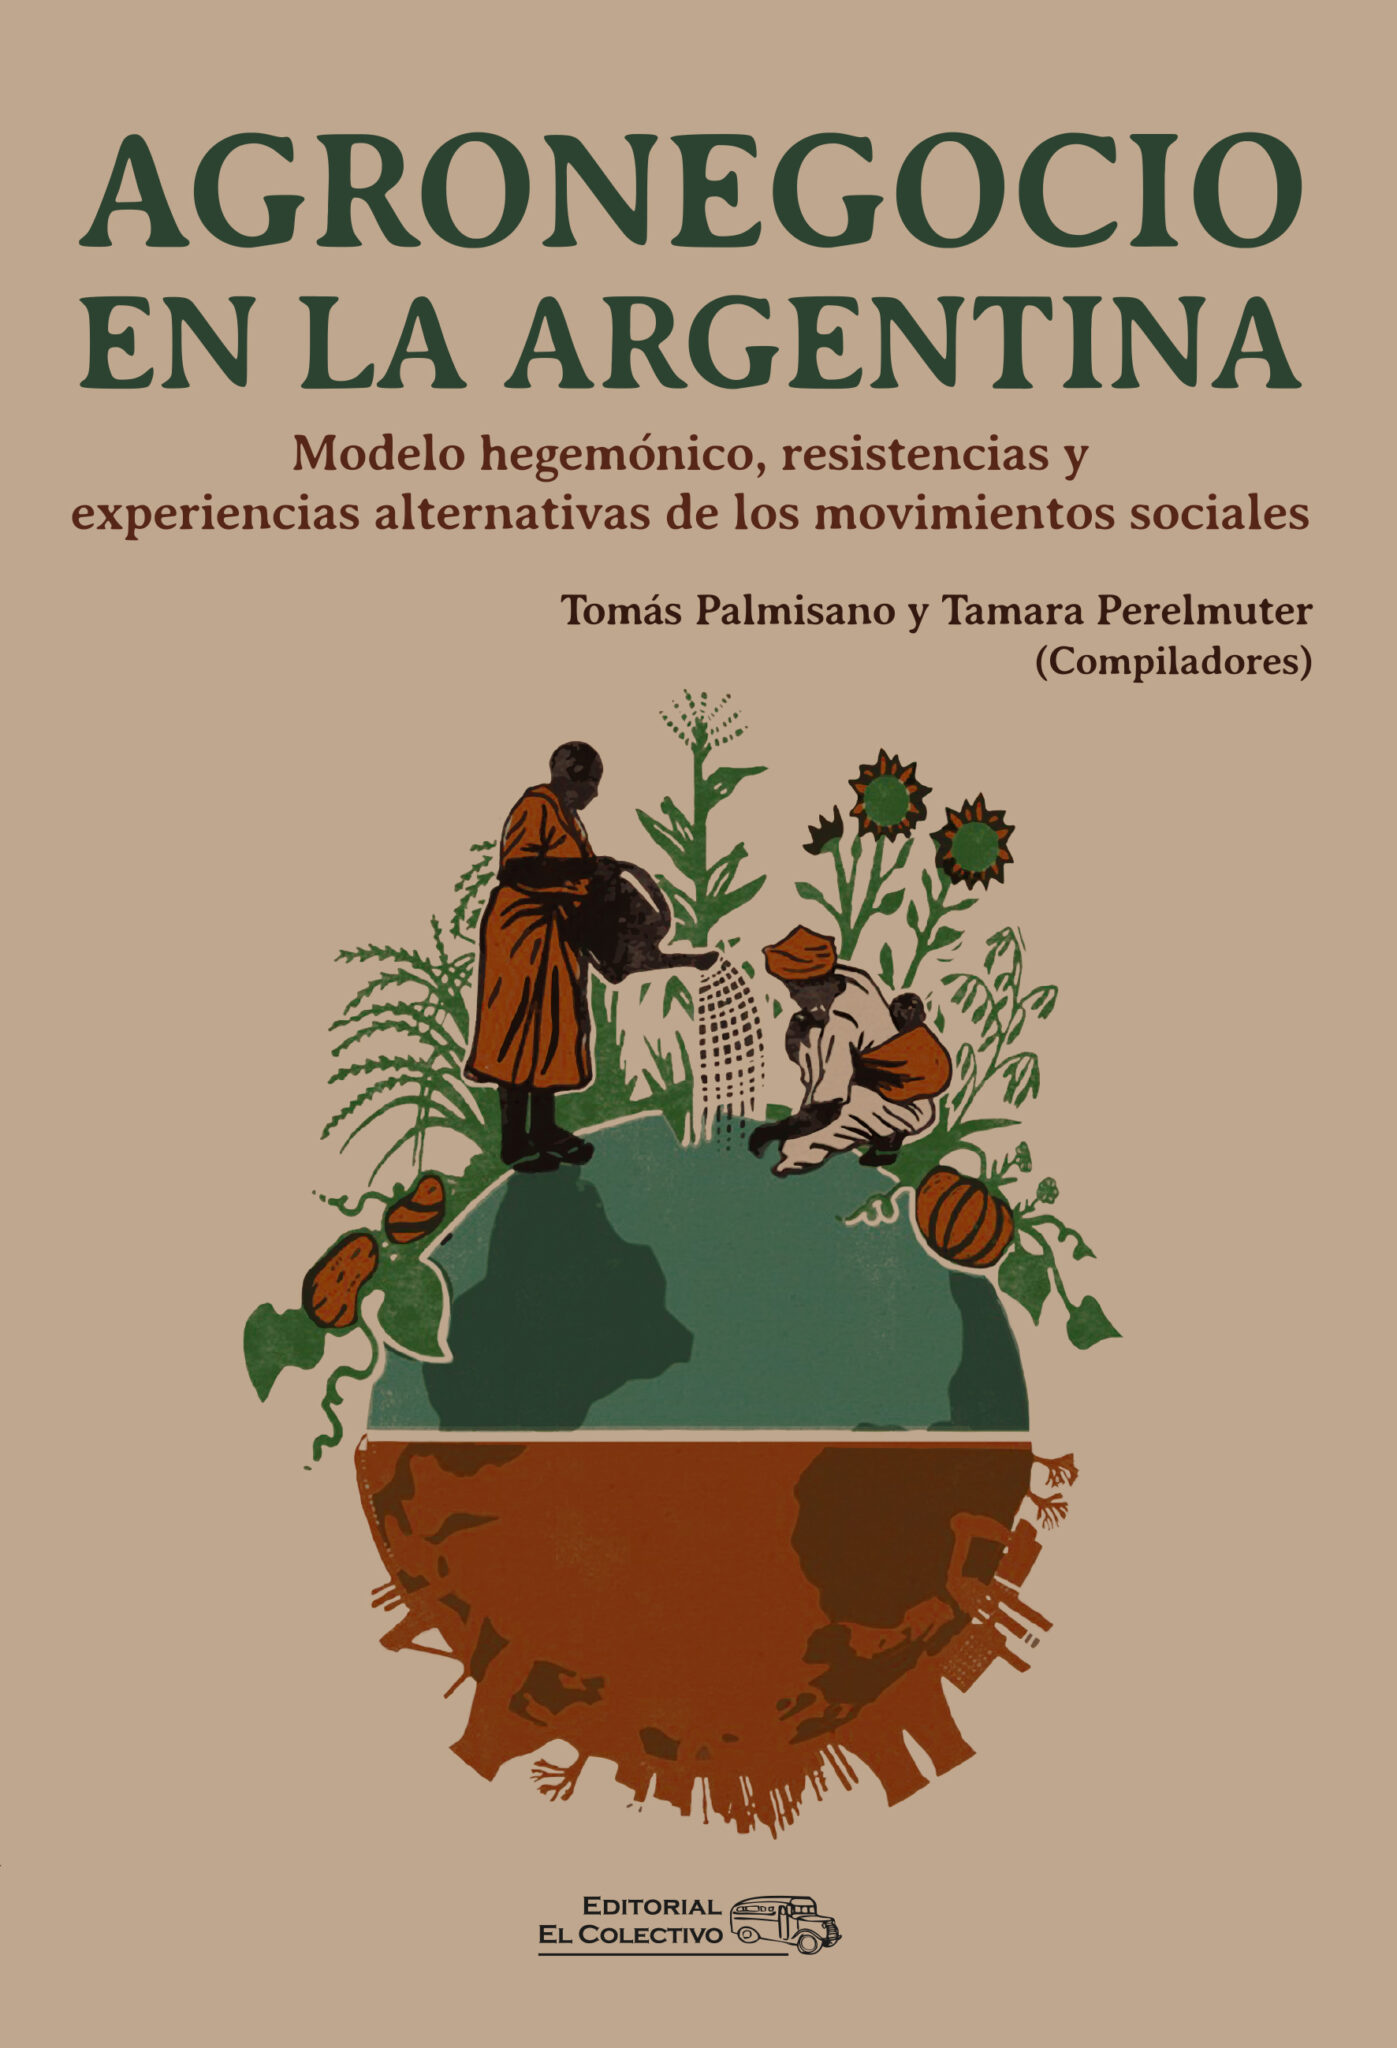 Agronegocio en la Argentina. Modelo hegemónico, resistencias y experiencias alternativas de los movimientos sociales